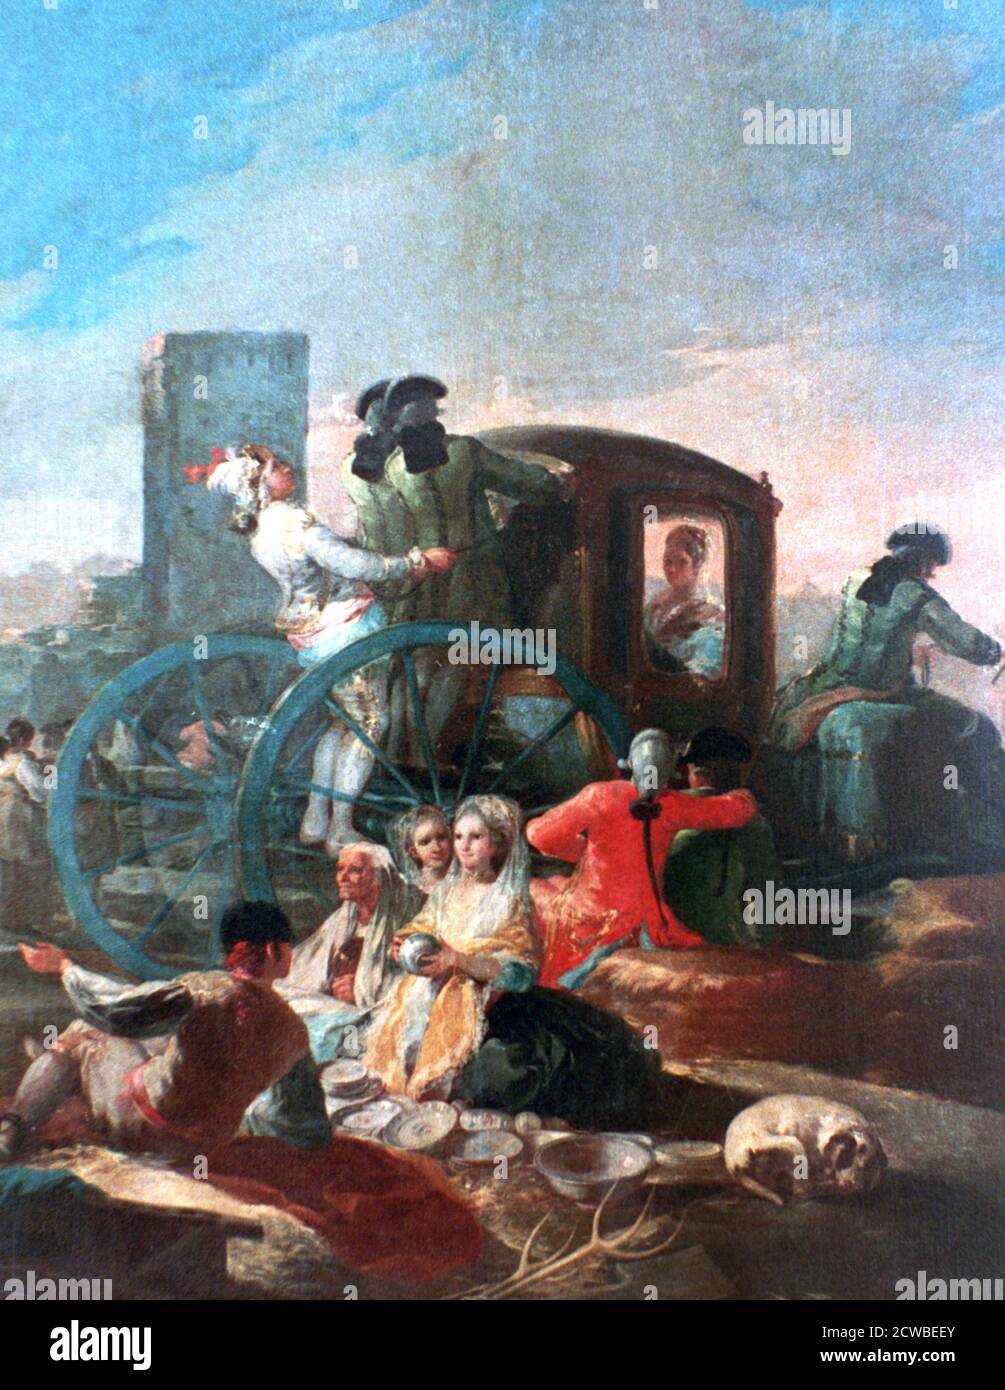 The Pottery Vendor', 1778. Artiste: Francisco Goya. Francisco Goya(1746-1828) était un artiste espagnol dont les peintures, dessins et gravures reflétaient des bouleversements historiques contemporains et influençaient d'importants peintres des XIXe et XXe siècles. Banque D'Images